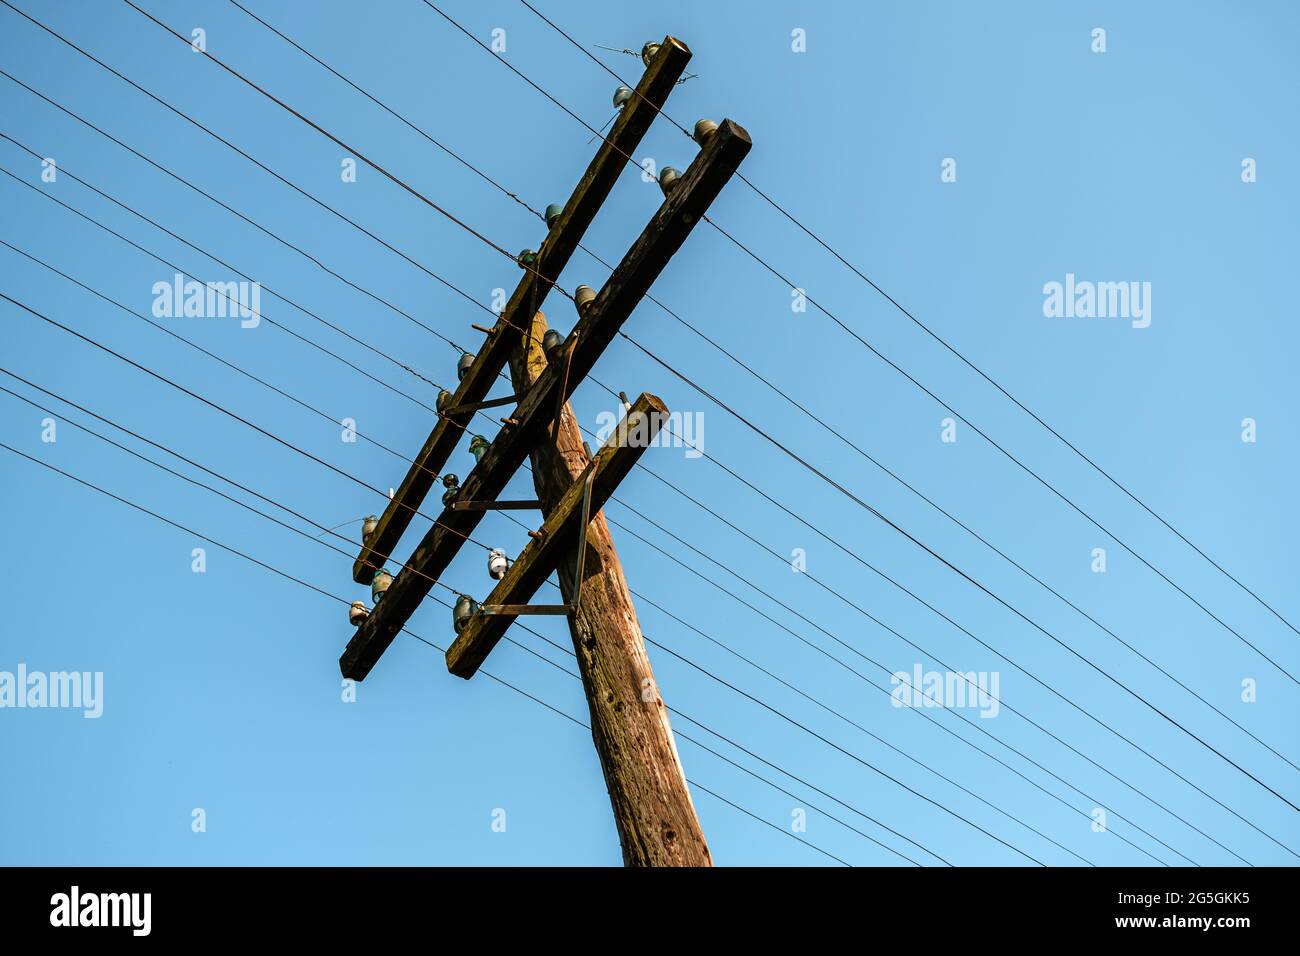 Ein hölzerner, elektrischer Mast an den Bahngleisen Stockfoto